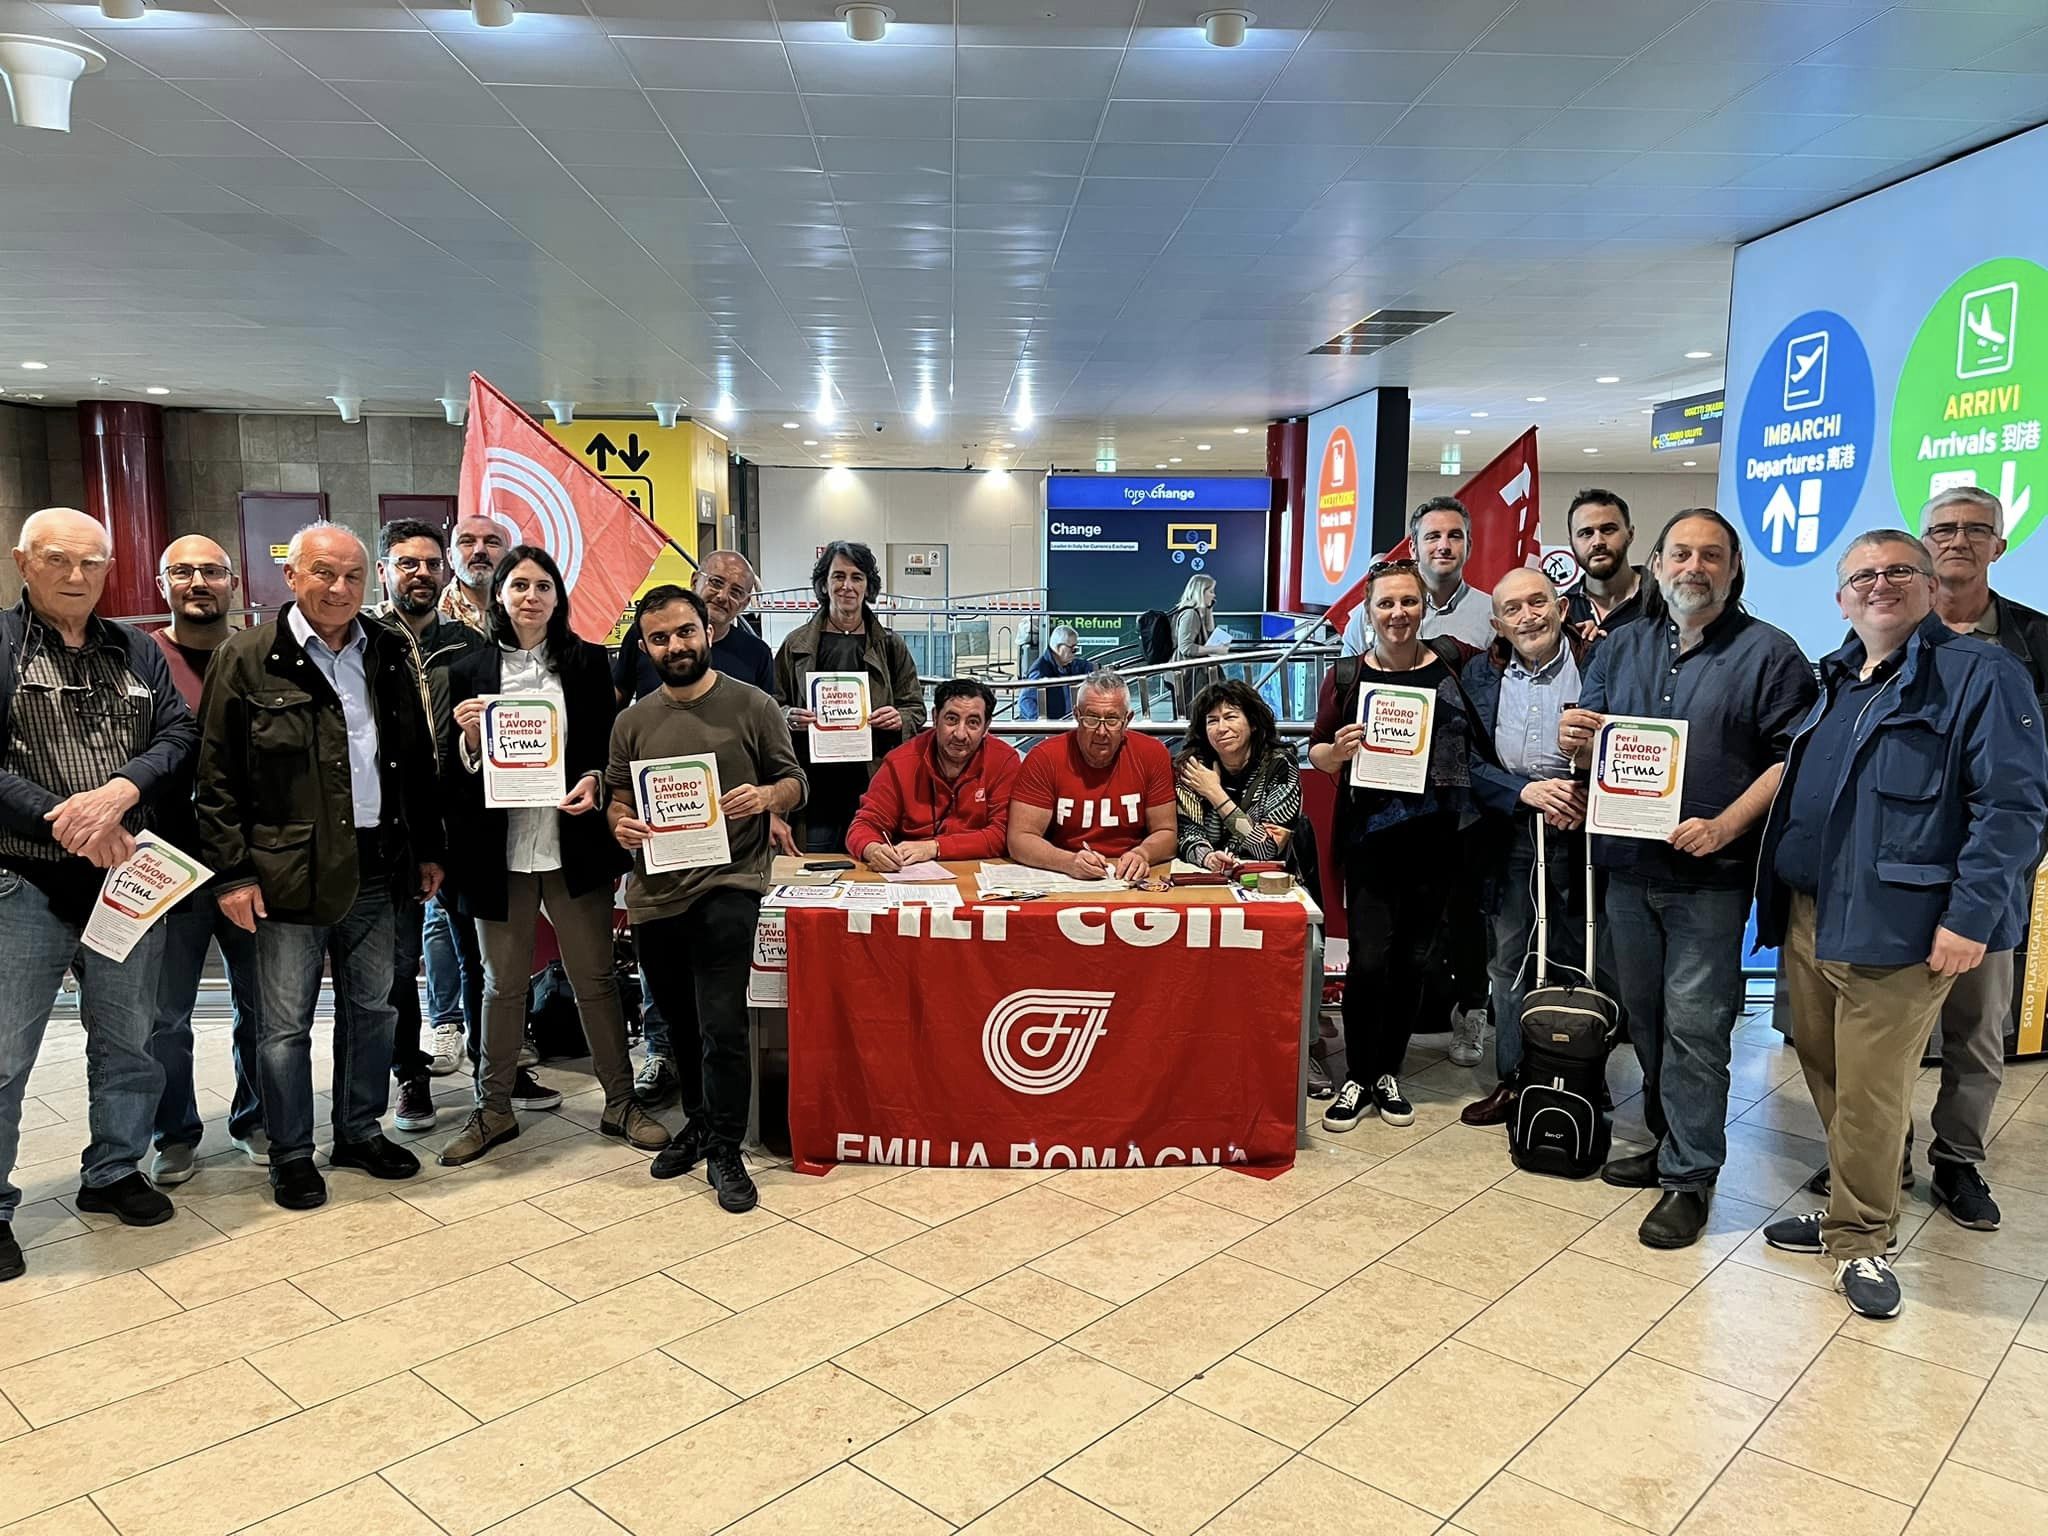 Aeroporto, firme per i referendum CGIL e sostegno a lavoratrici e lavoratori